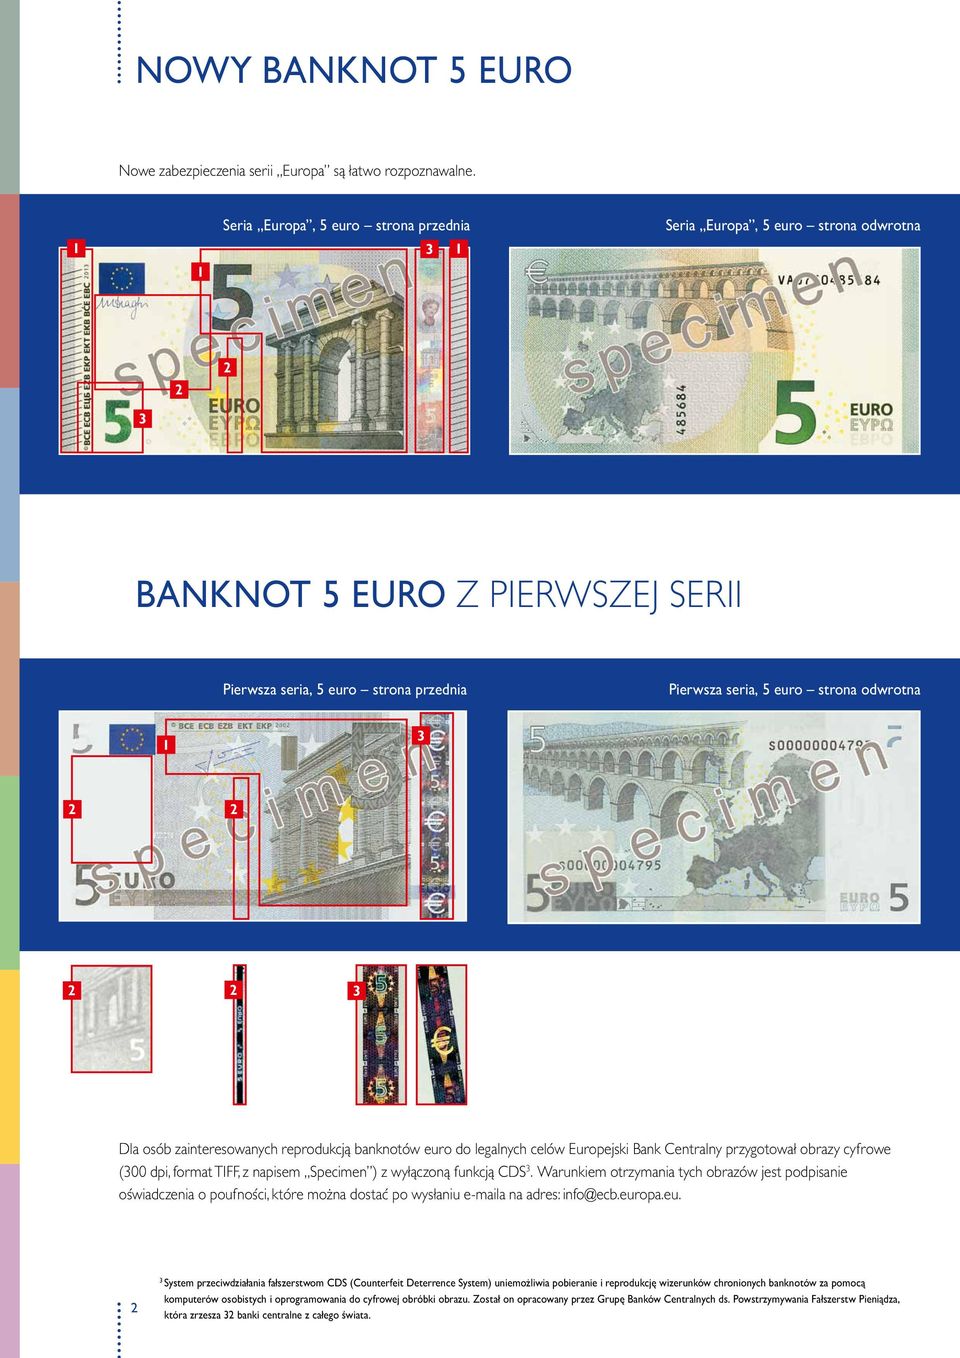 1 3 2 2 2 2 3 Dla osób zainteresowanych reprodukcją banknotów euro do legalnych celów Europejski Bank Centralny przygotował obrazy cyfrowe (300 dpi, format TIFF, z napisem Specimen ) z wyłączoną